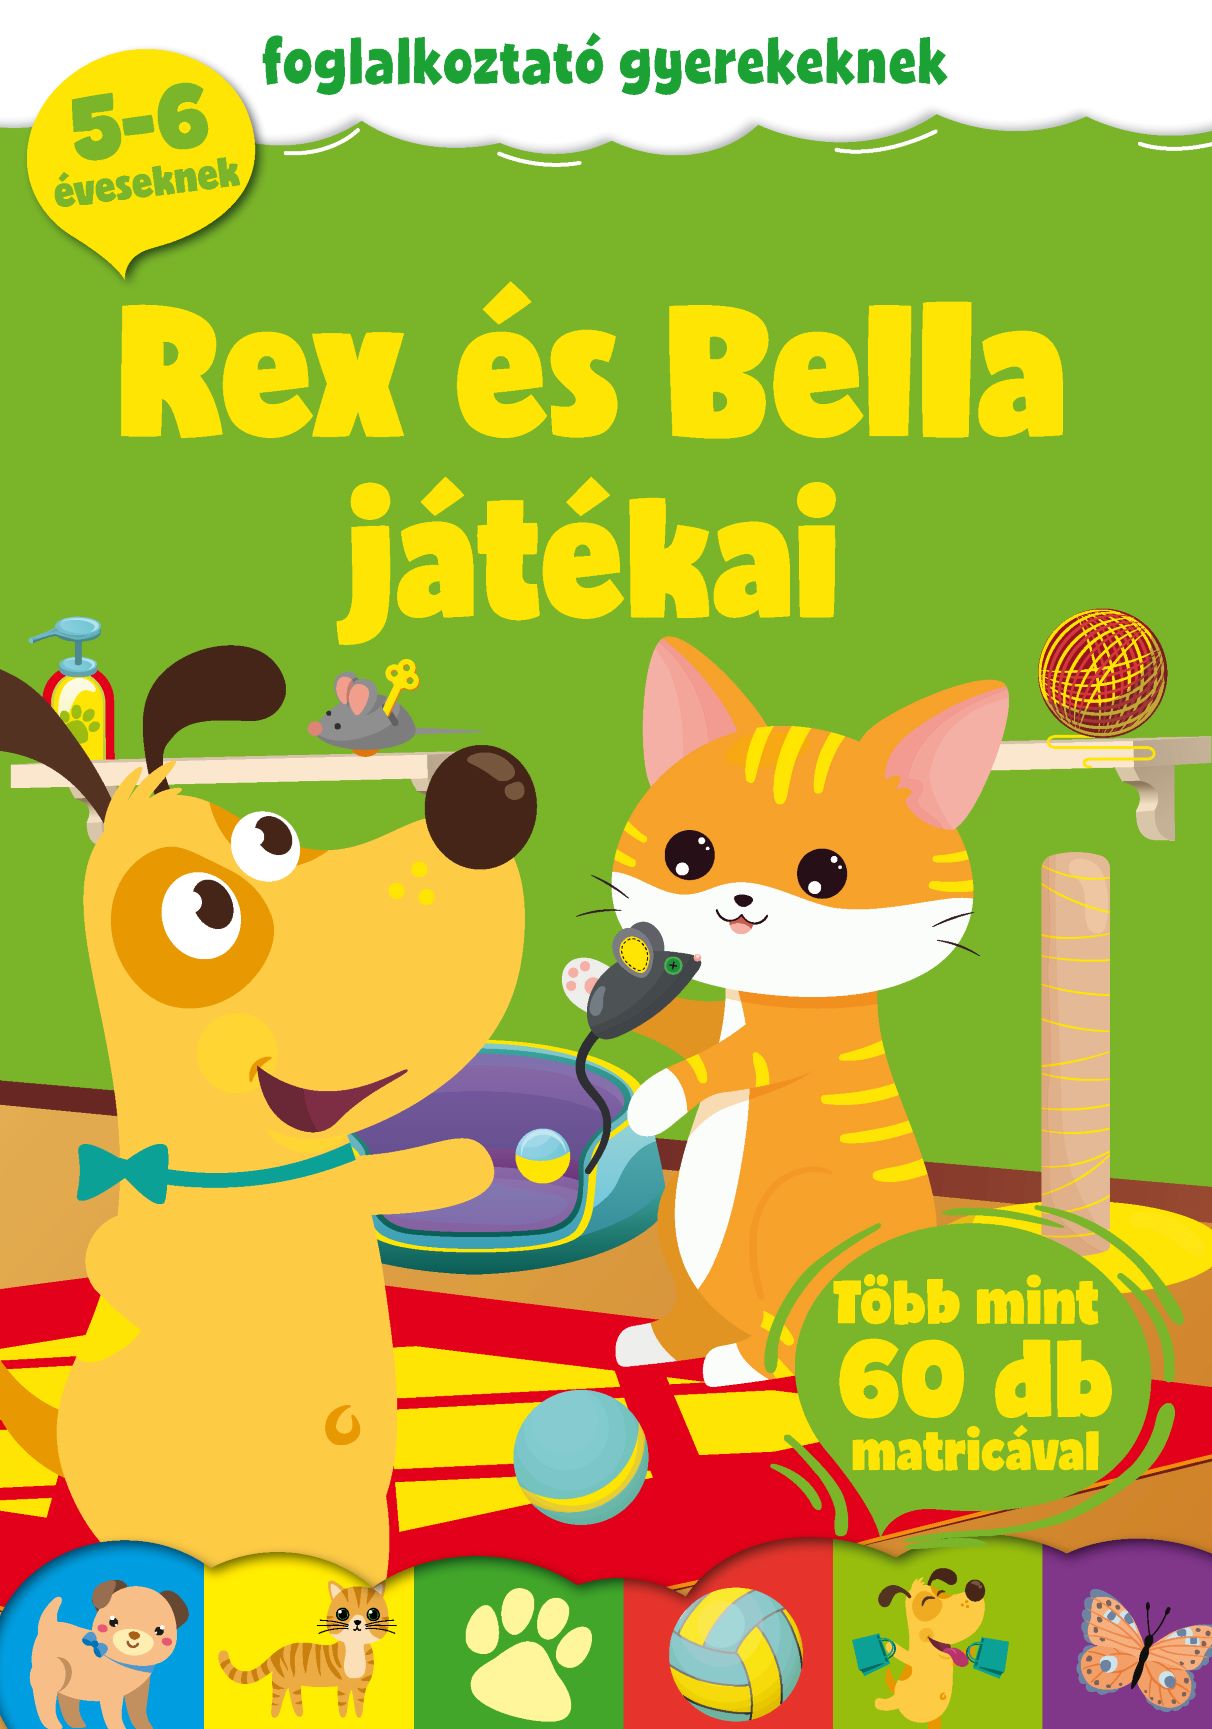 Rex és Bella játékai